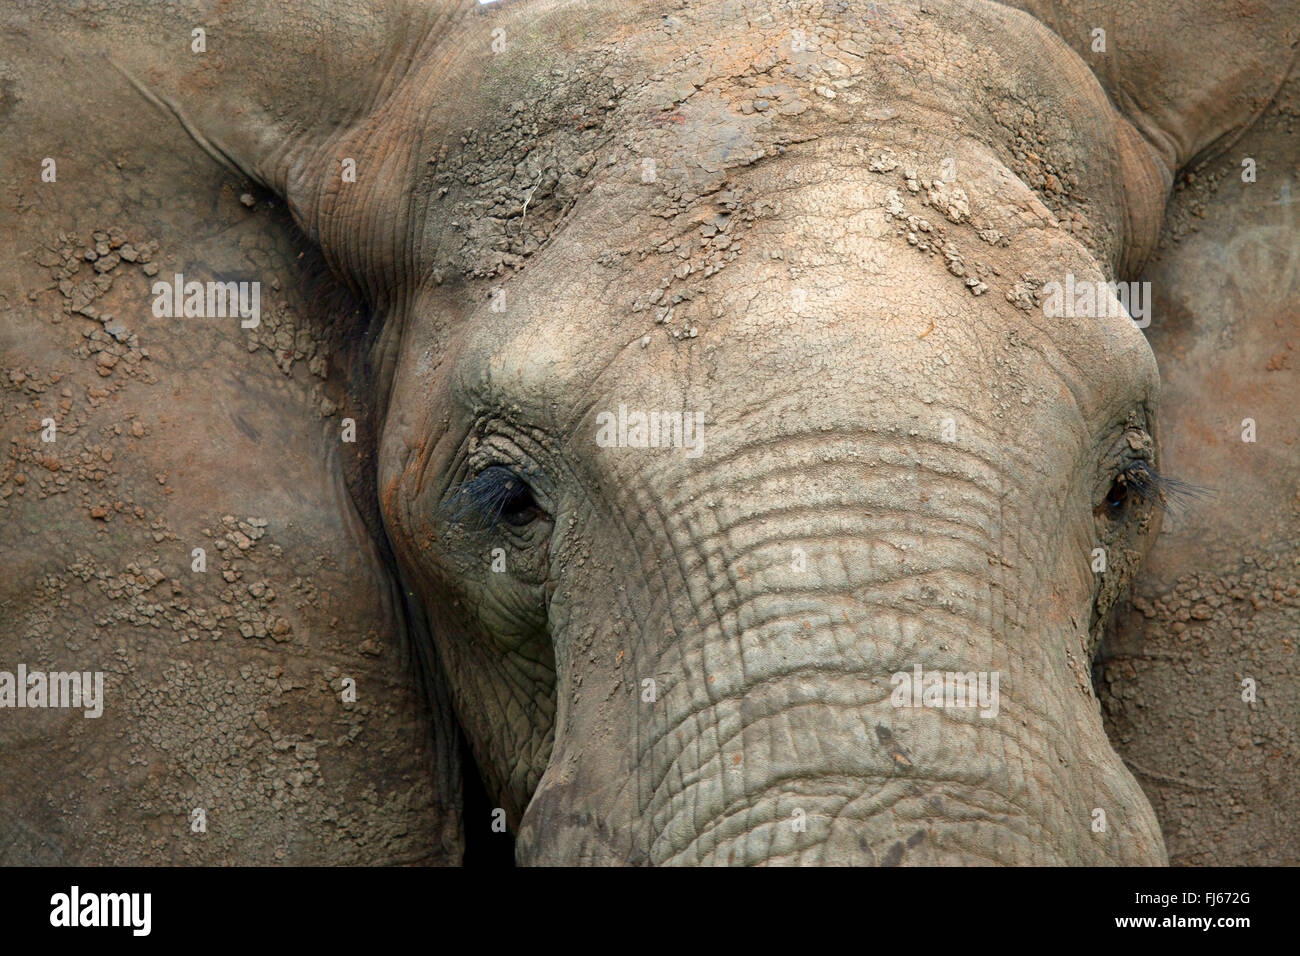 L'éléphant africain (Loxodonta africana), portrait, section, Afrique du Sud Banque D'Images